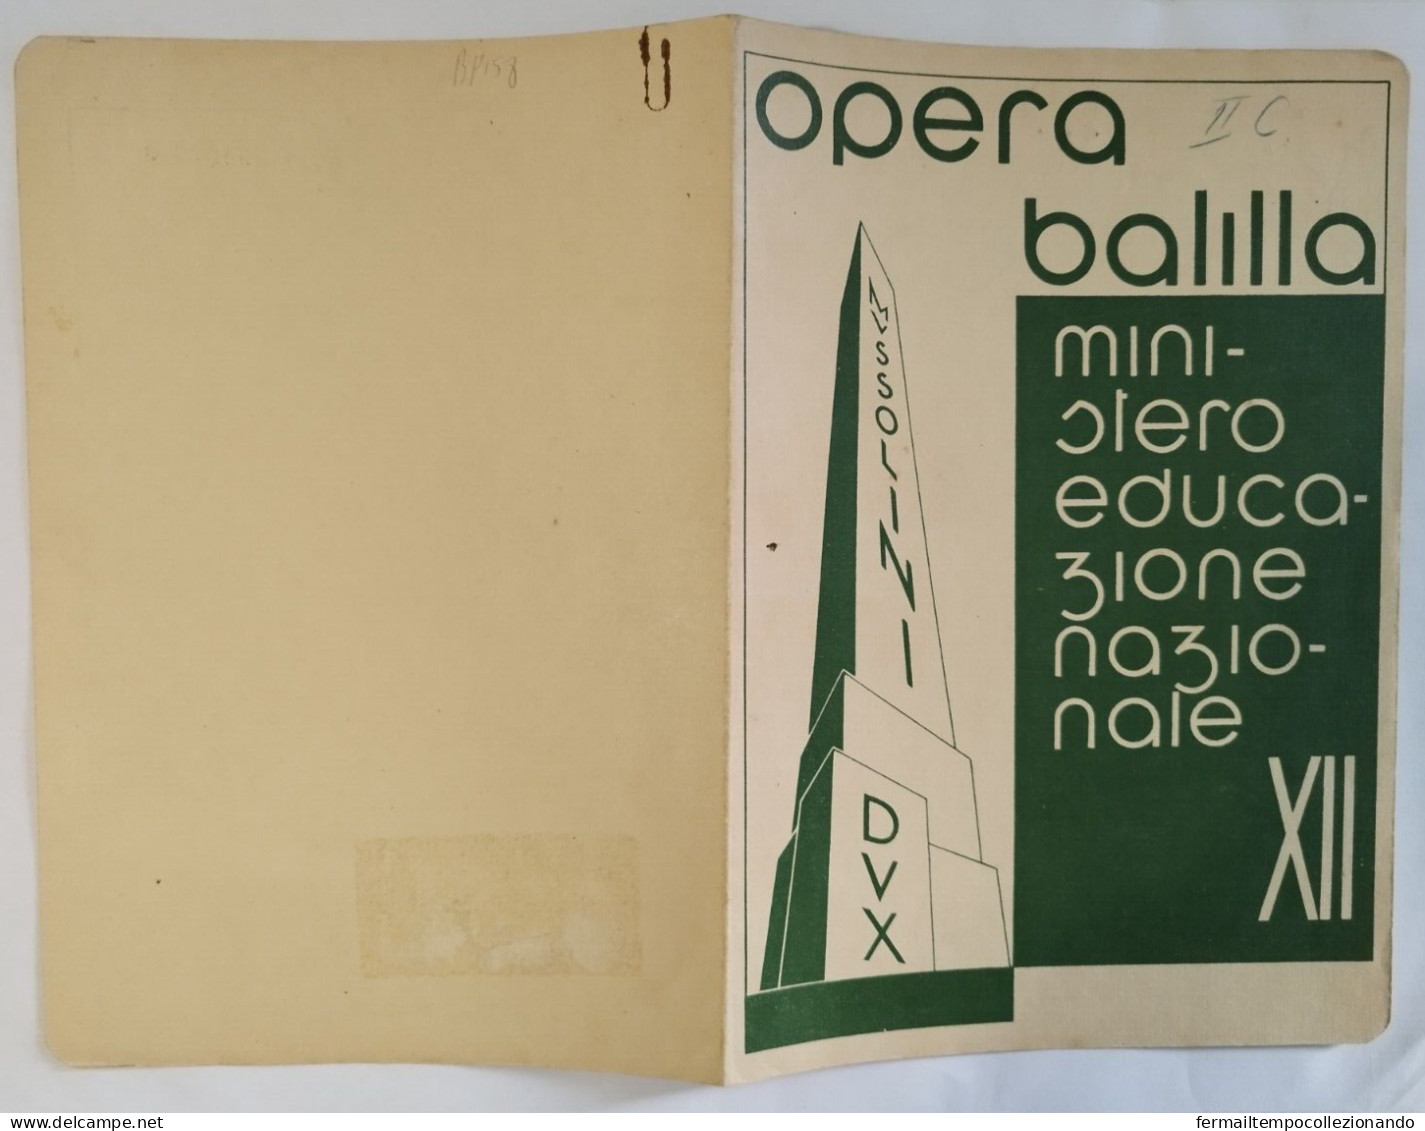 Bp158 Pagella Fascista Regno D'italia Opera Balilla Gallipoli Lecce 1934 - Diplome Und Schulzeugnisse